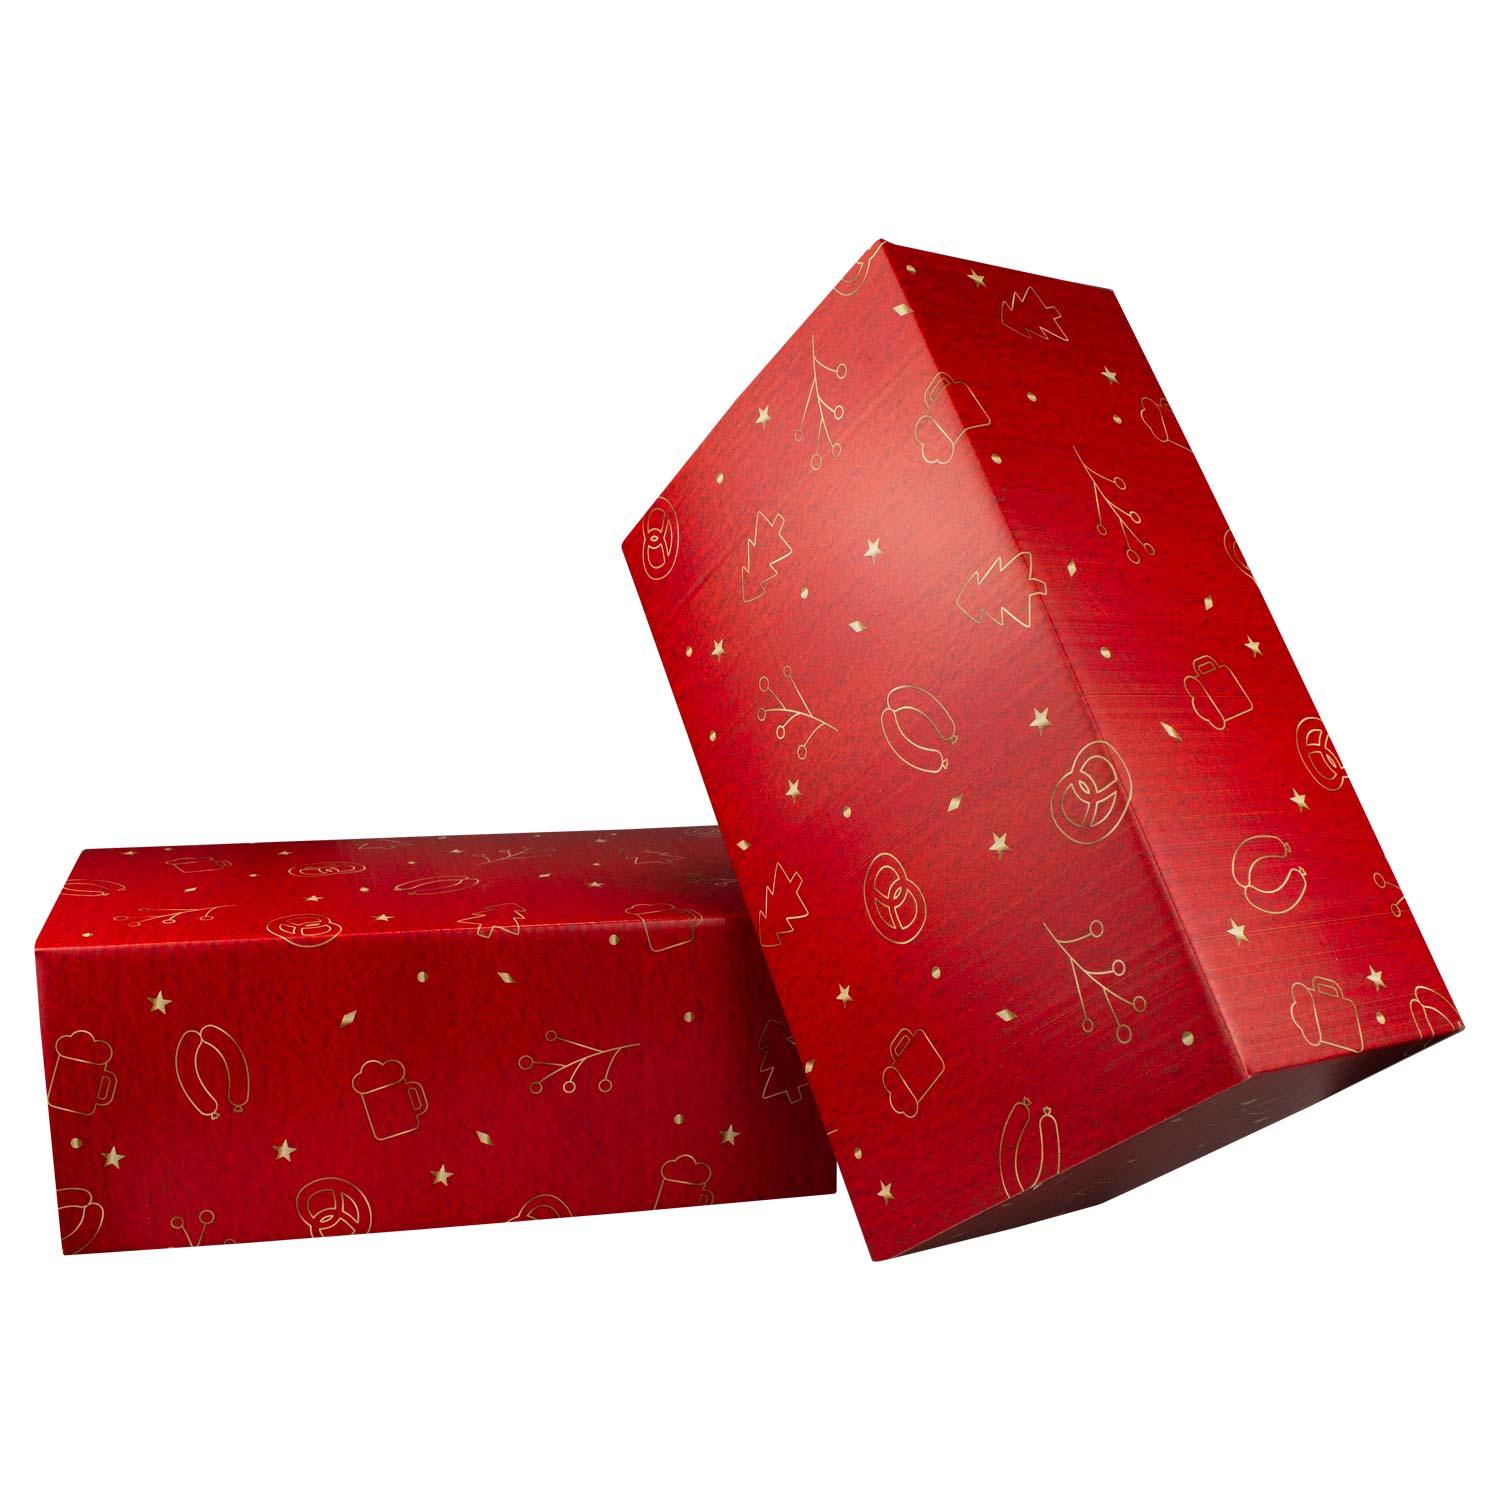 Weihnachtsbox "Weihnachtsfeier Glühwein" - bavariashop - mei LebensGfui